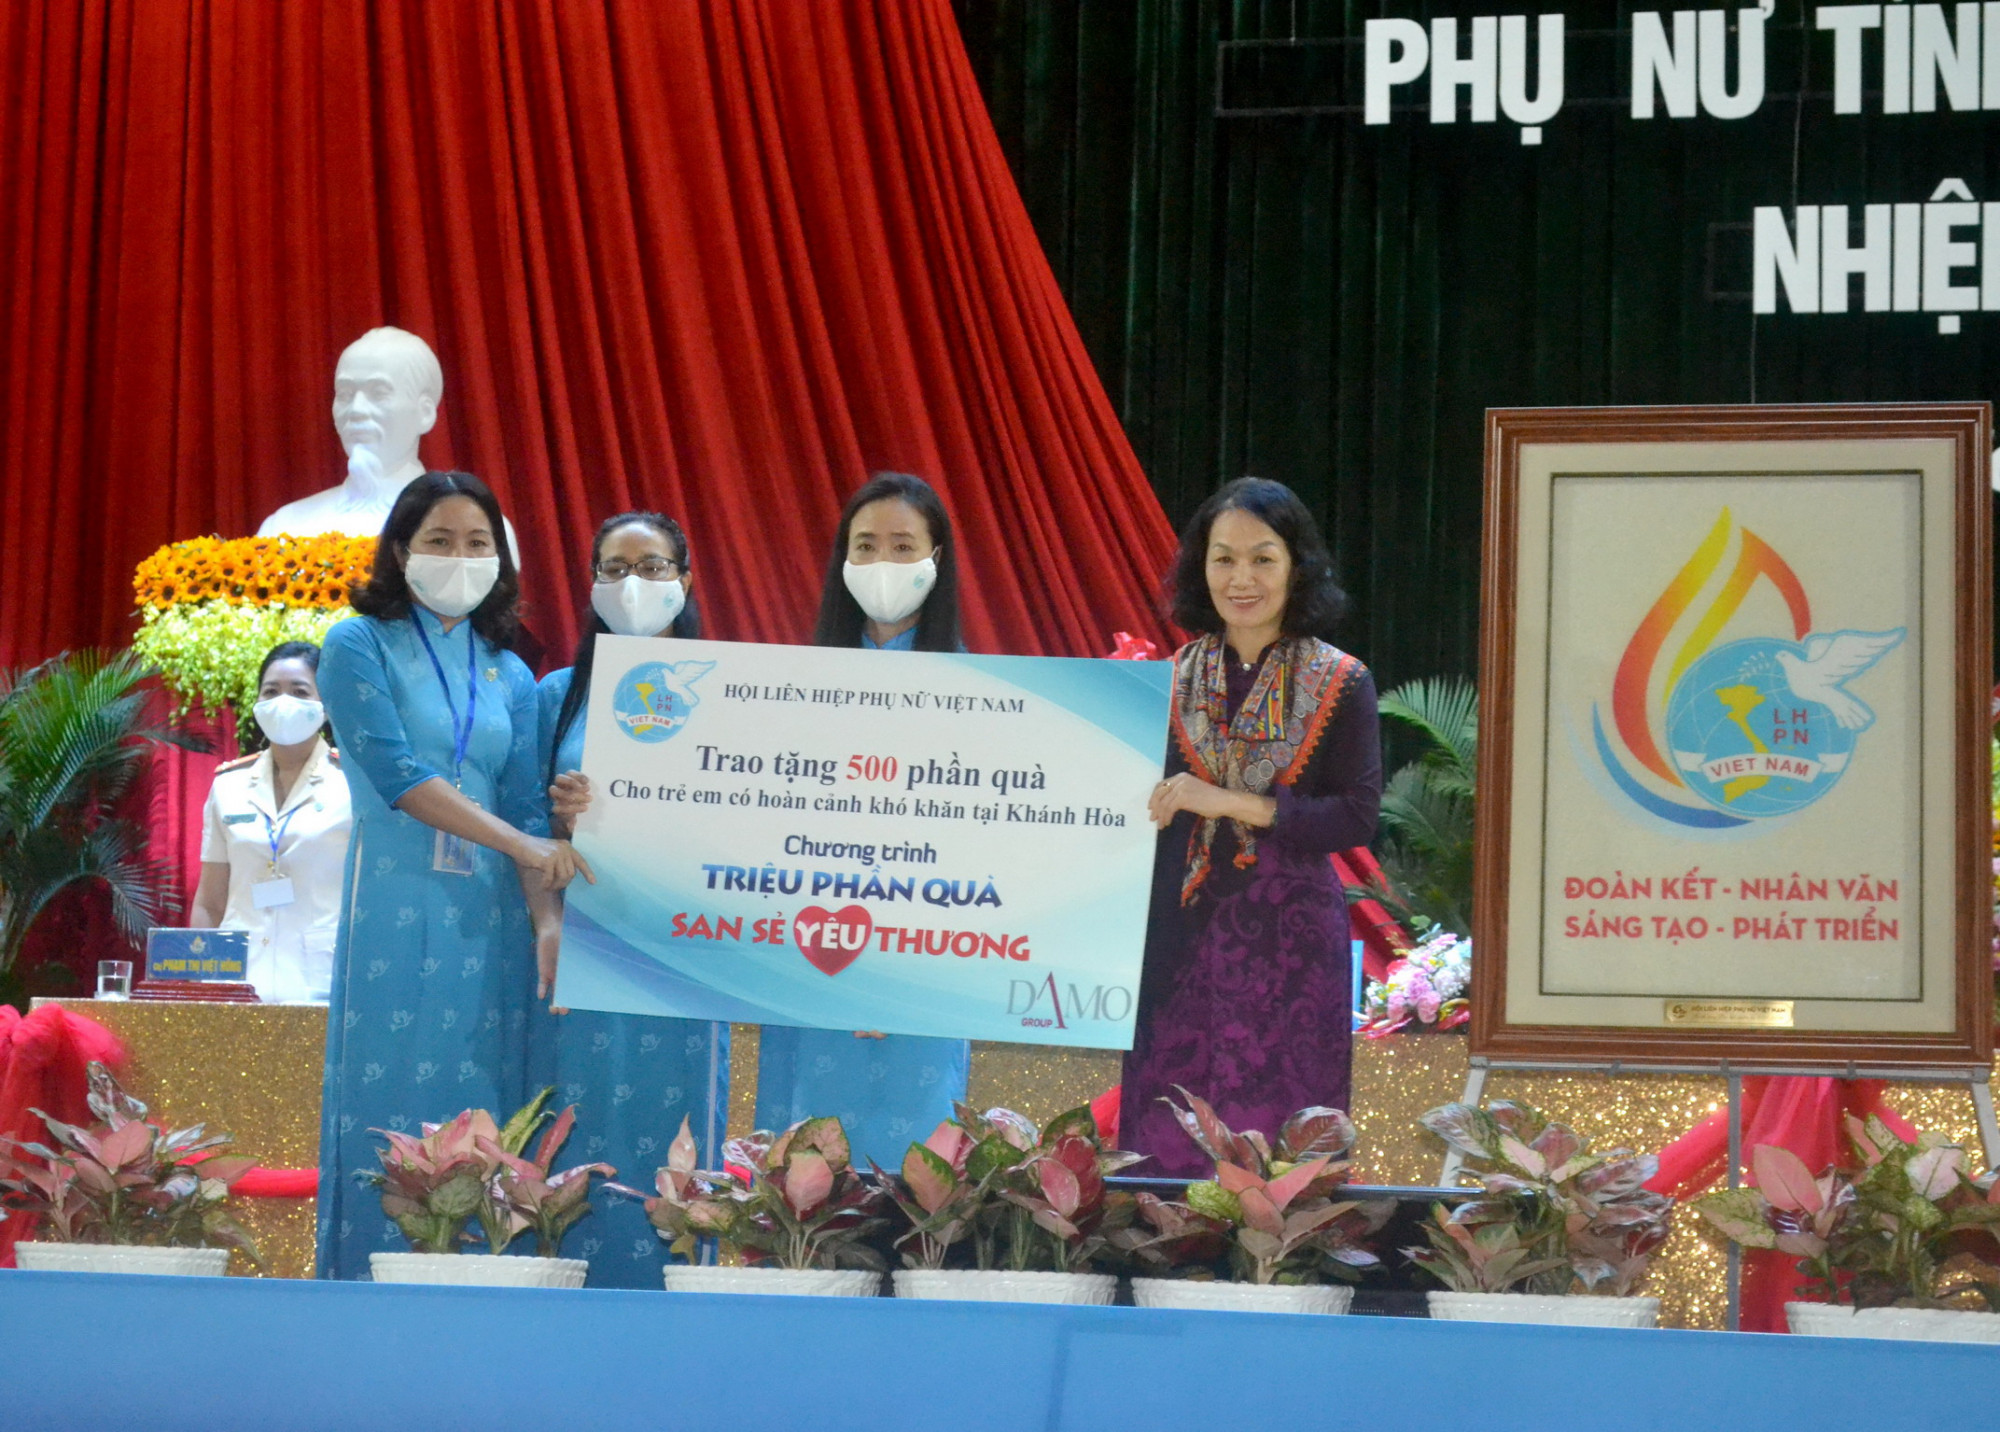 Bà Bùi Thị Hòa - Phó chủ tịch Trung ương Hội LHPN Việt Nam tặng tranh biểu trưng đại hội cho Hội và quà cho các em nhỏ có hoàn cảnh khó khăn ở tỉnh Khánh Hòa